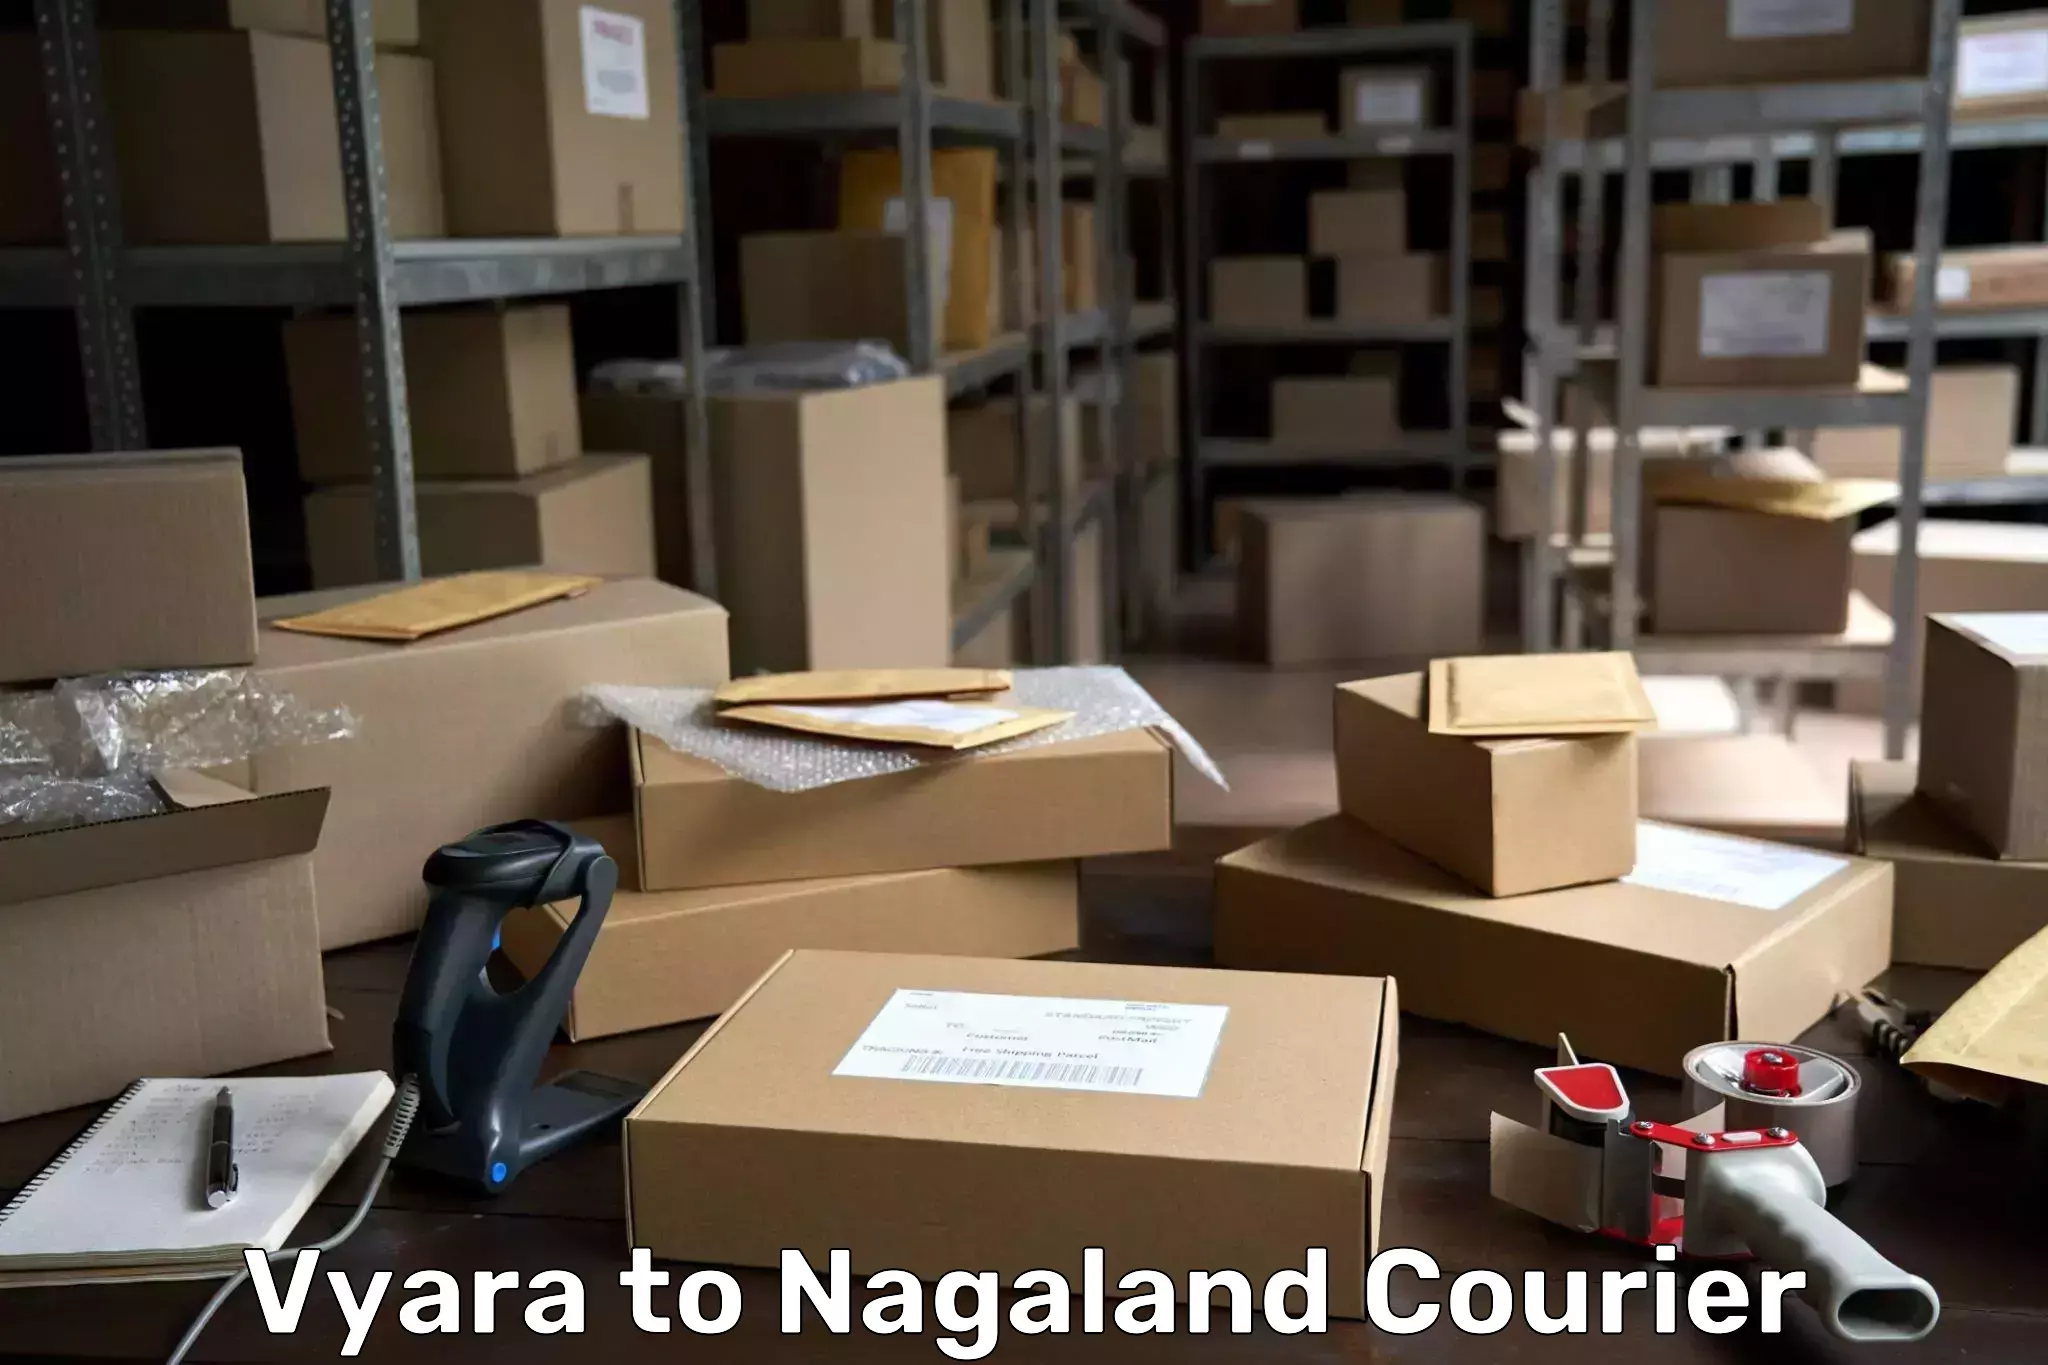 User-friendly delivery service Vyara to Nagaland